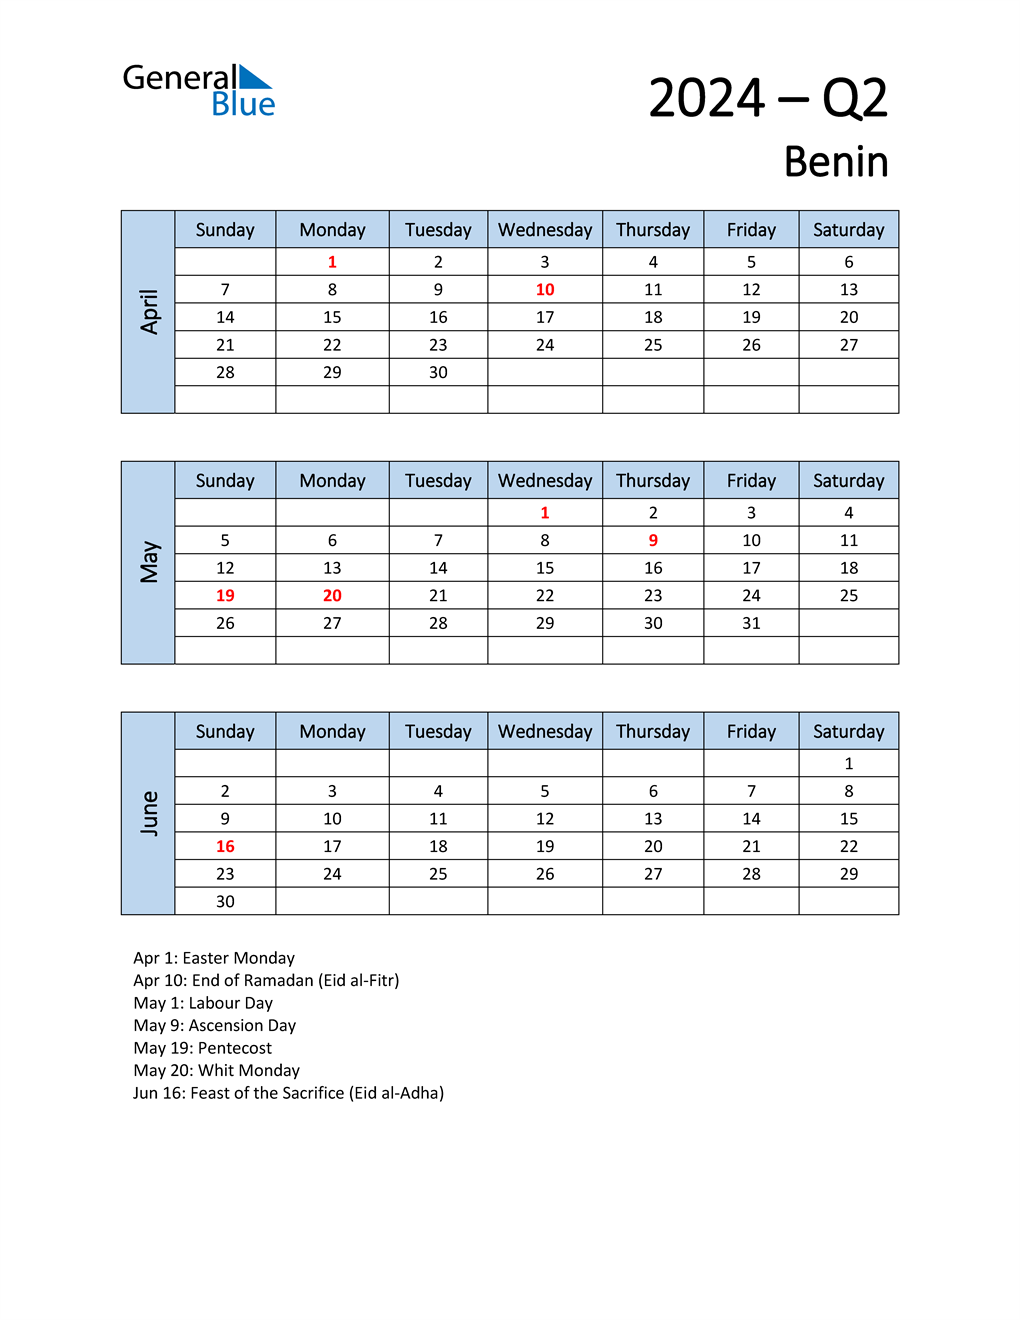  Free Q2 2024 Calendar for Benin